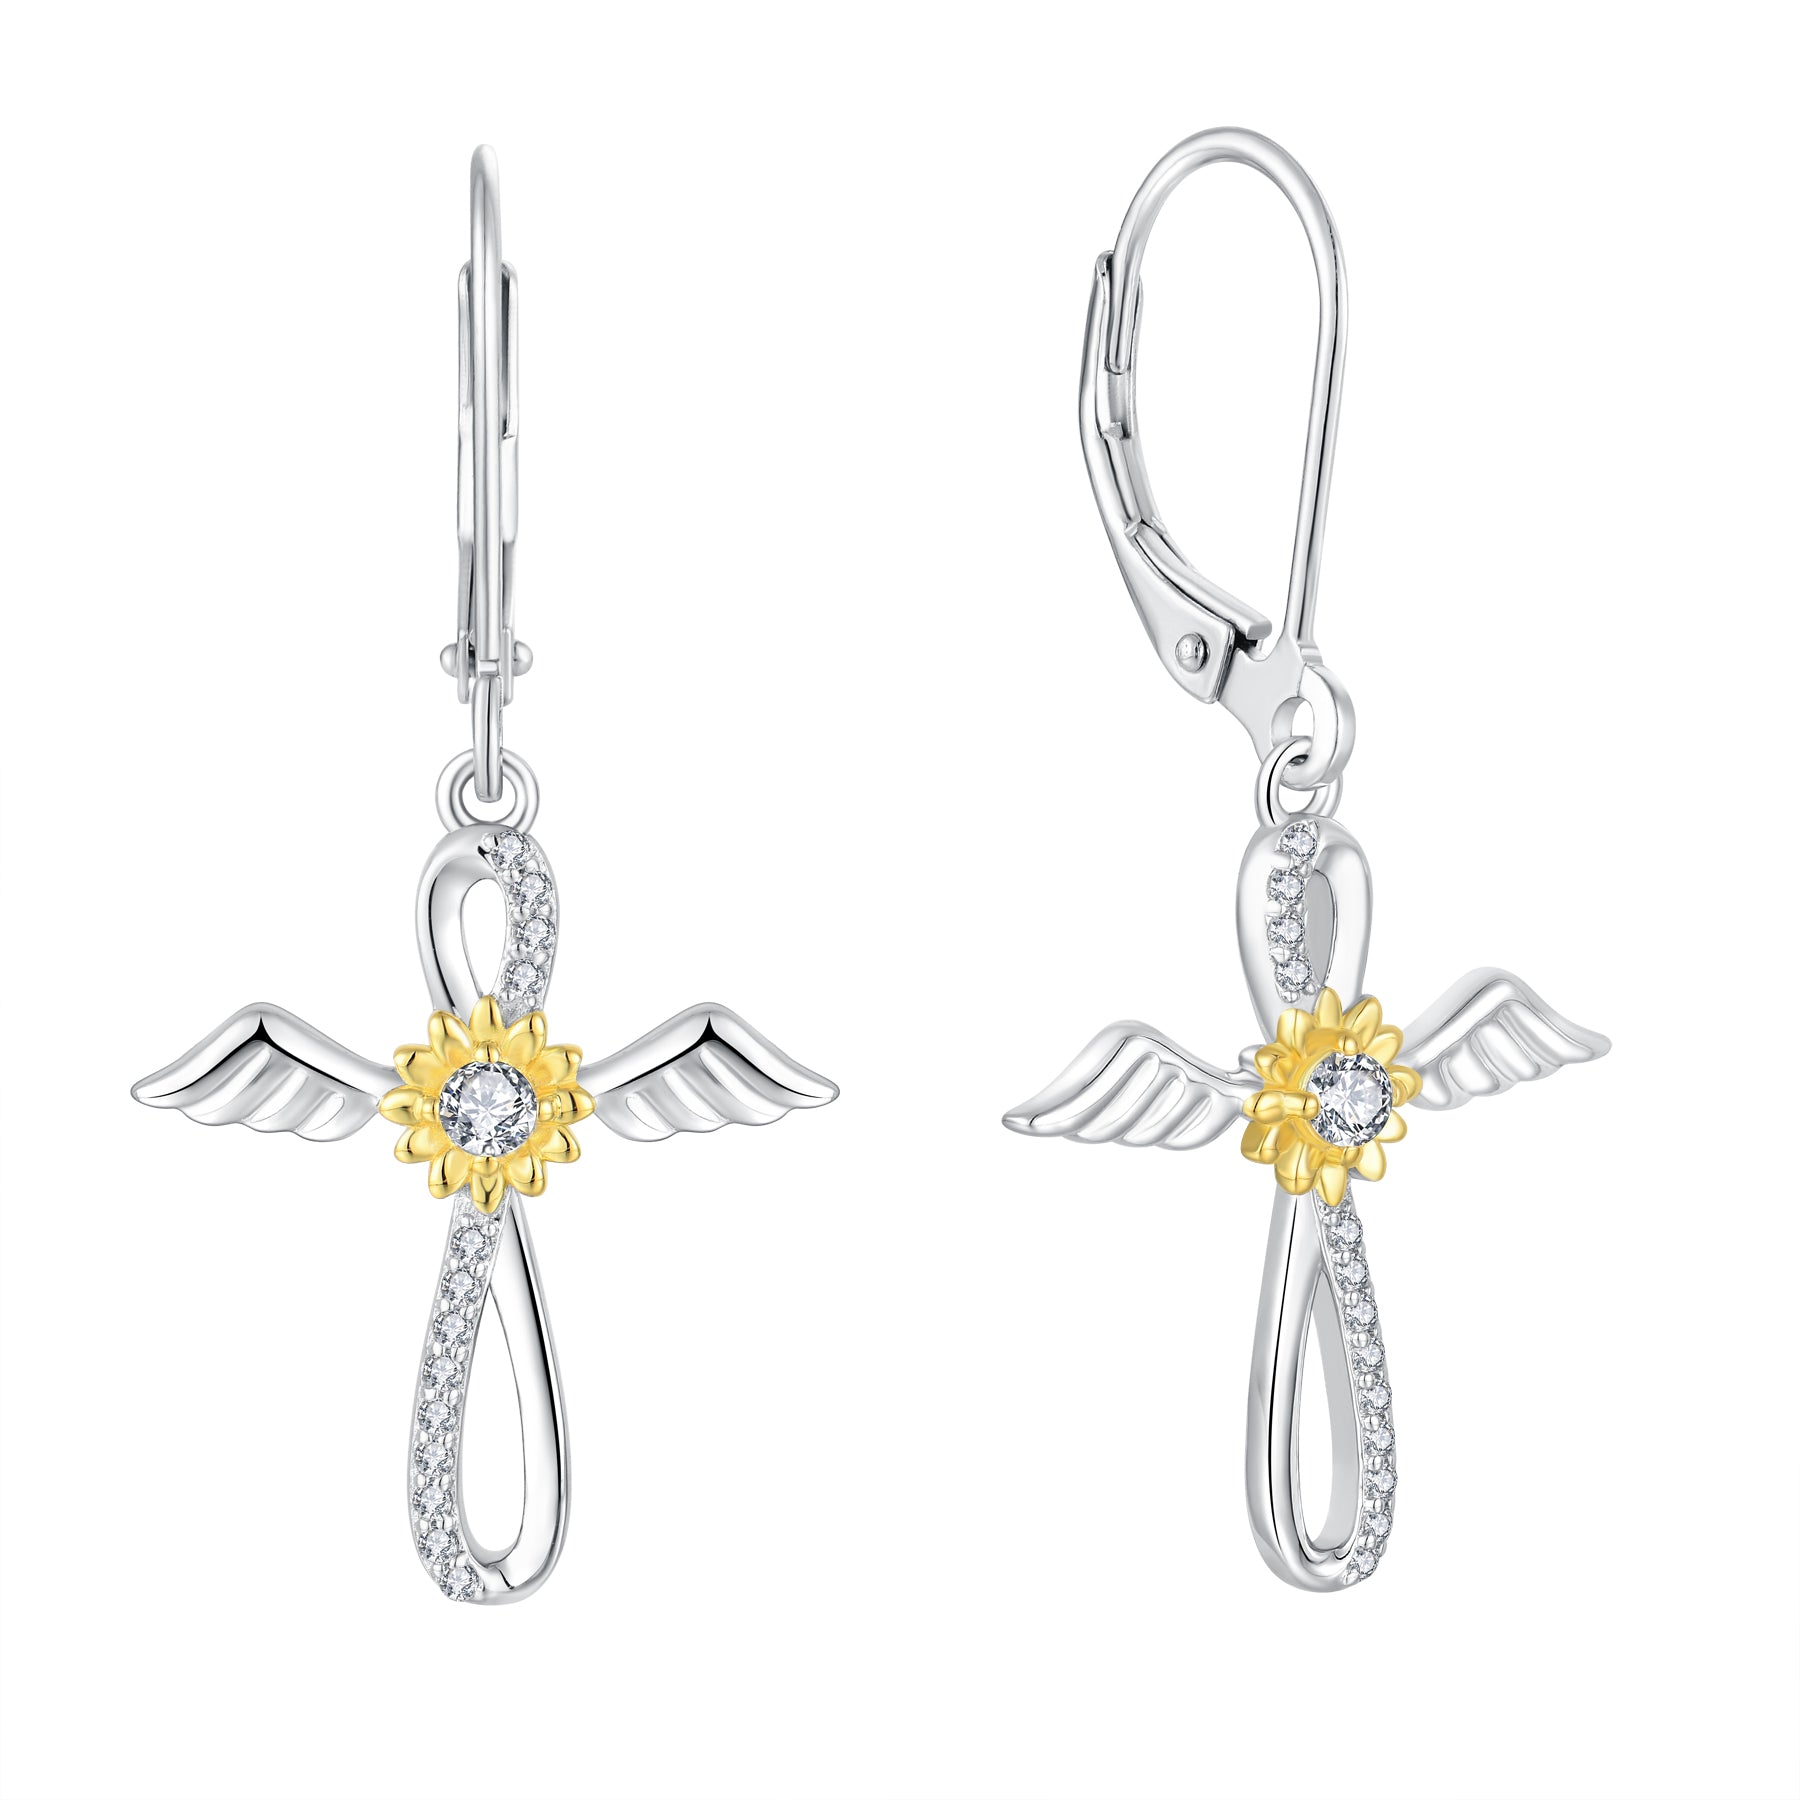 Starchenie Cross Dangle Drop Earrings 925 Sterling Silver Angel